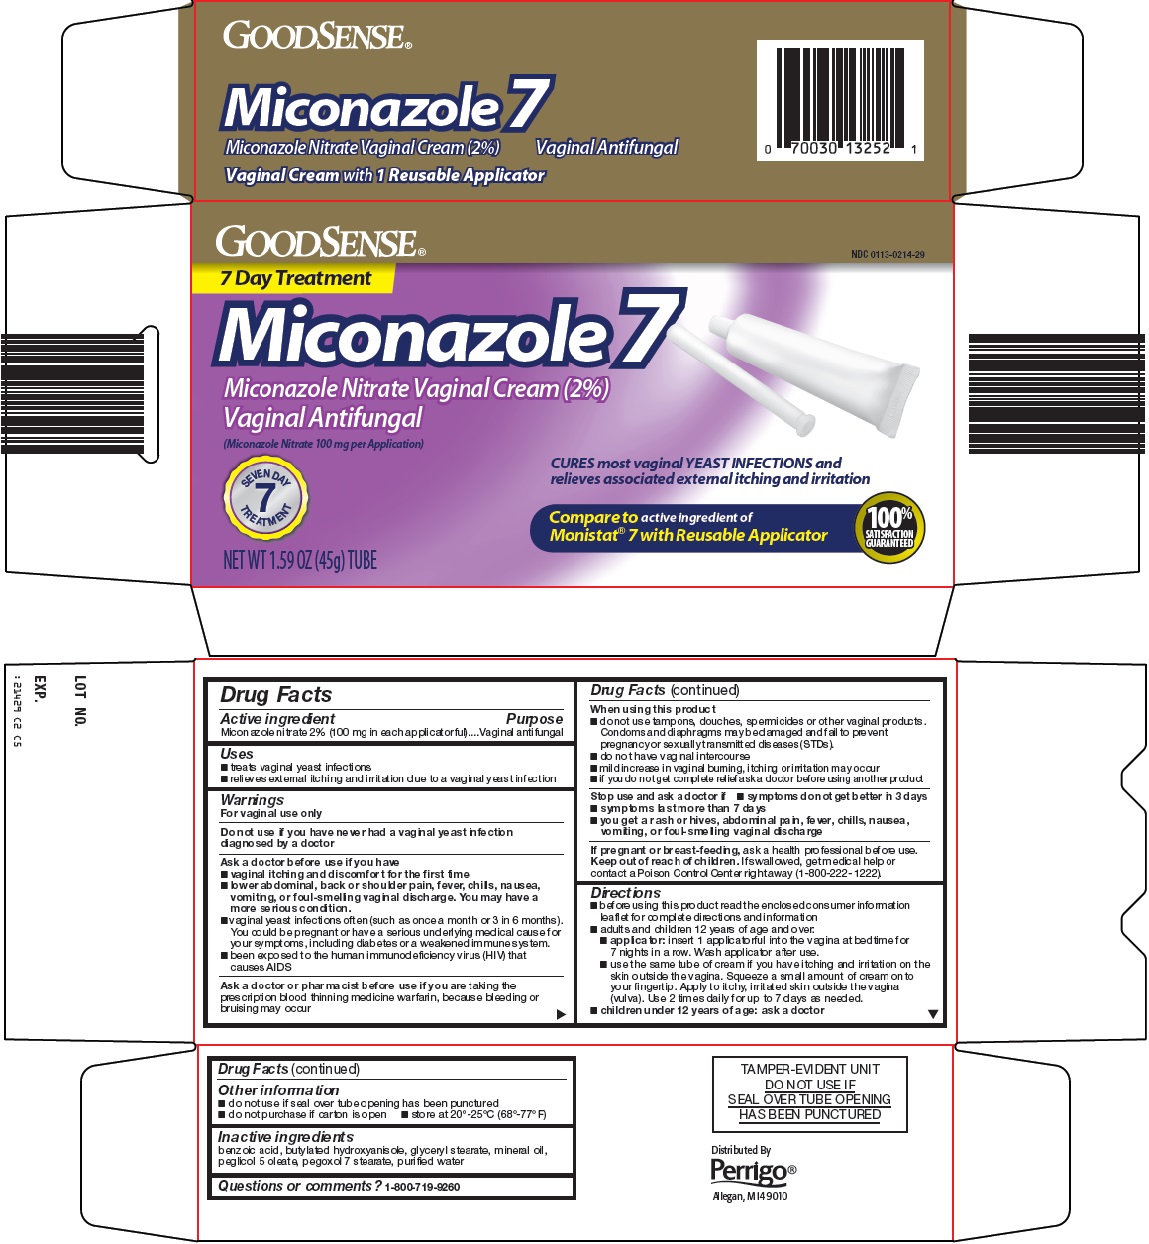 GoodSense Miconazole 7 image